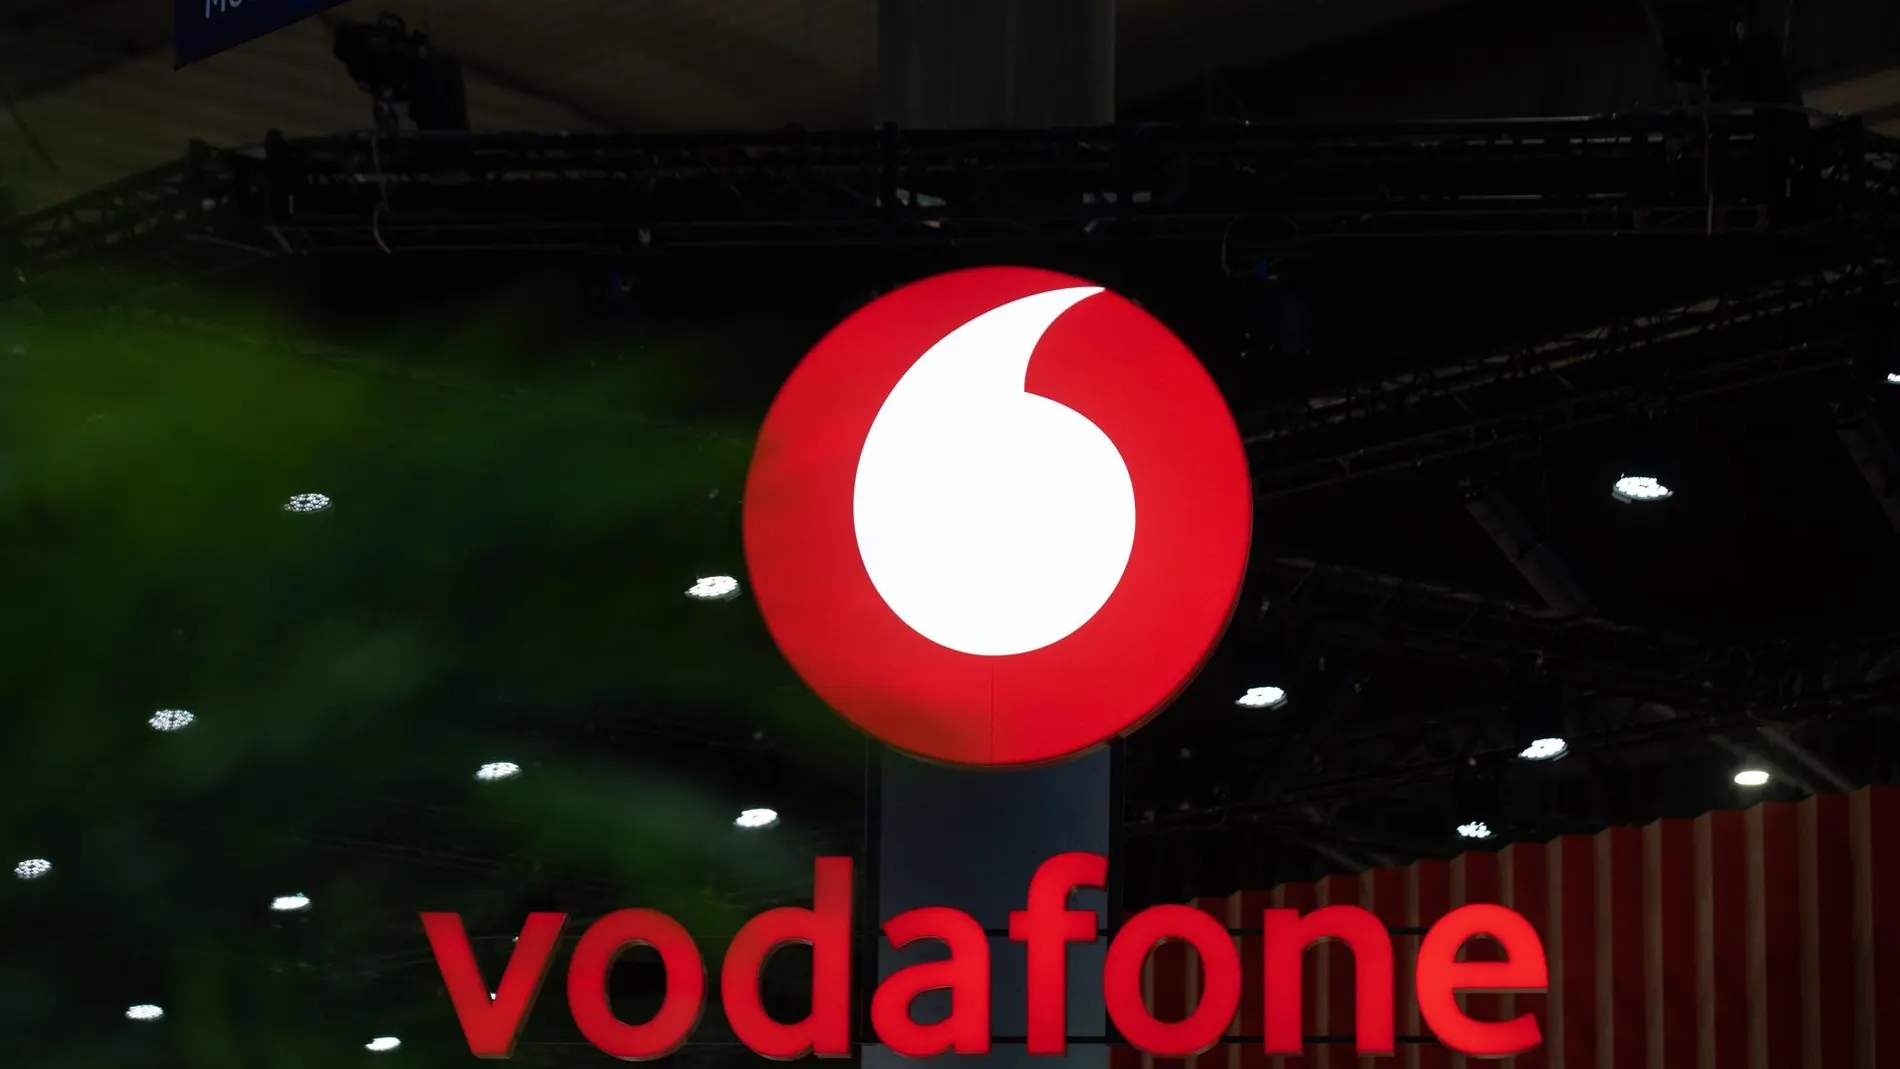 R.Unido.- Vodafone reduce un 2,3% los ingresos en su tercer trimestre fiscal, hasta 11.372 millones